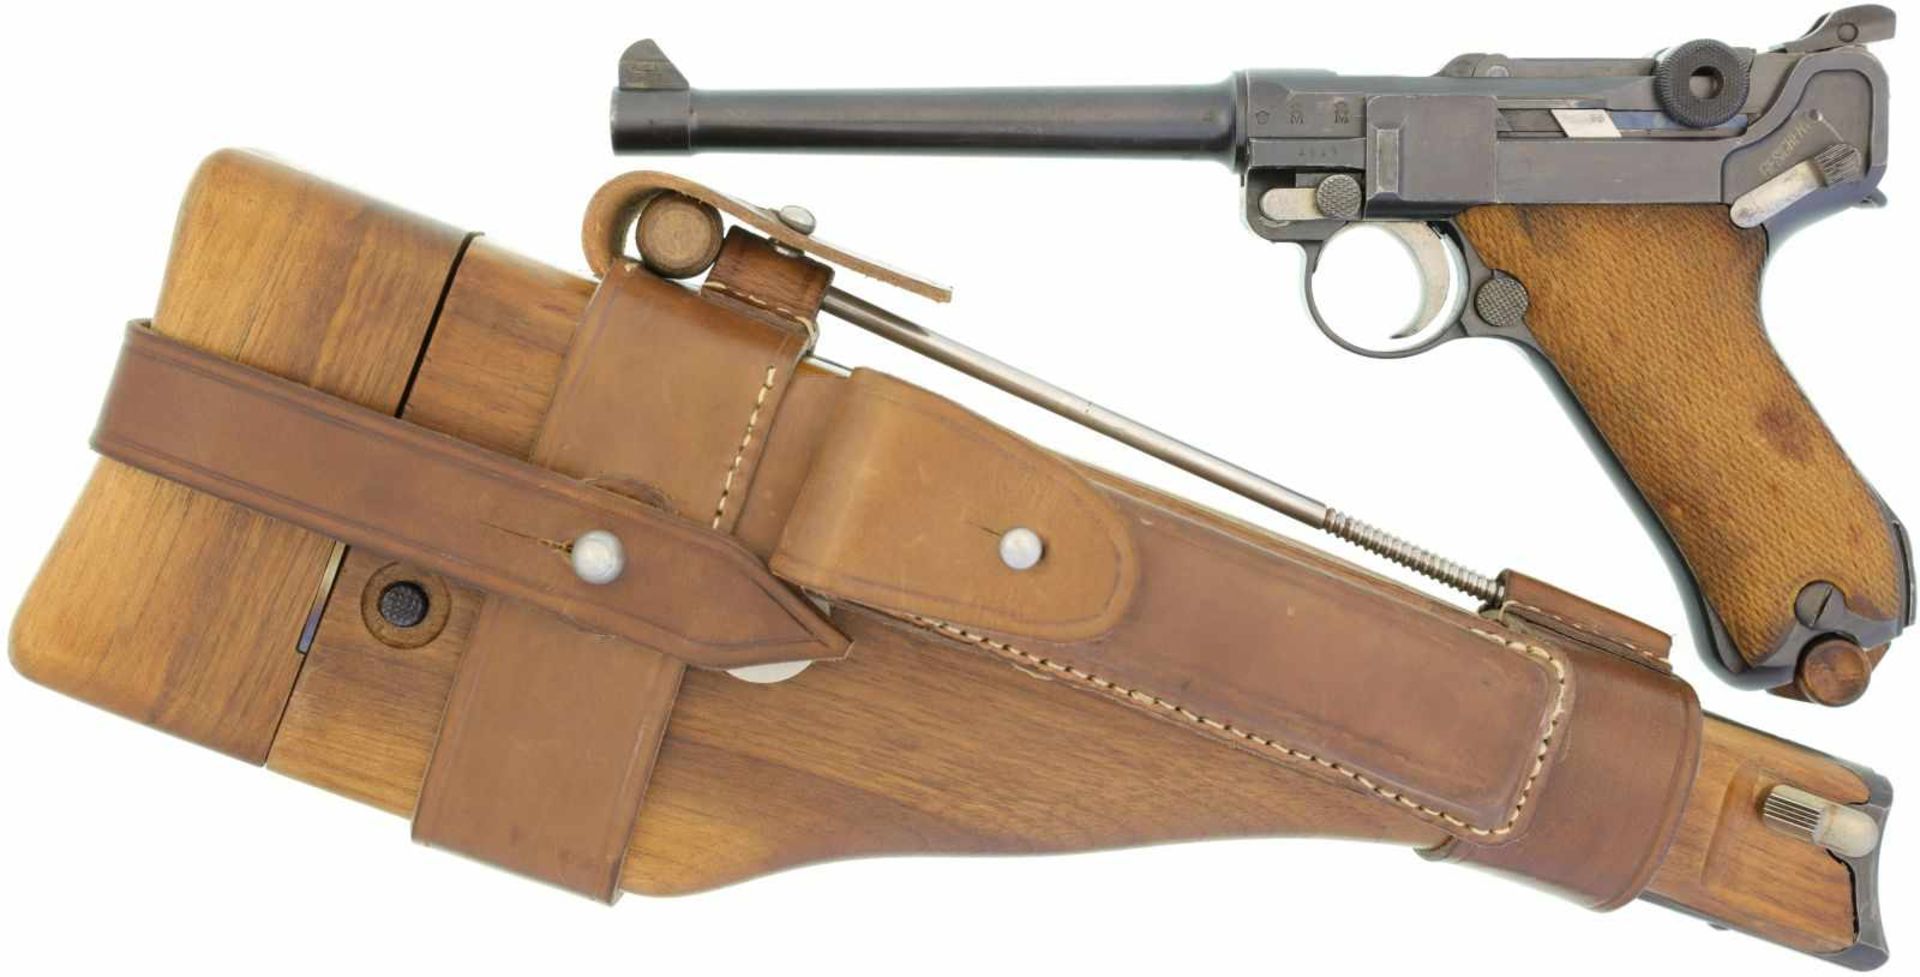 Pistole, Marine 1904, DWM 1917, Kal.9mmP@ LL 150mm, nummerngleiche Waffe mit fast vollständig